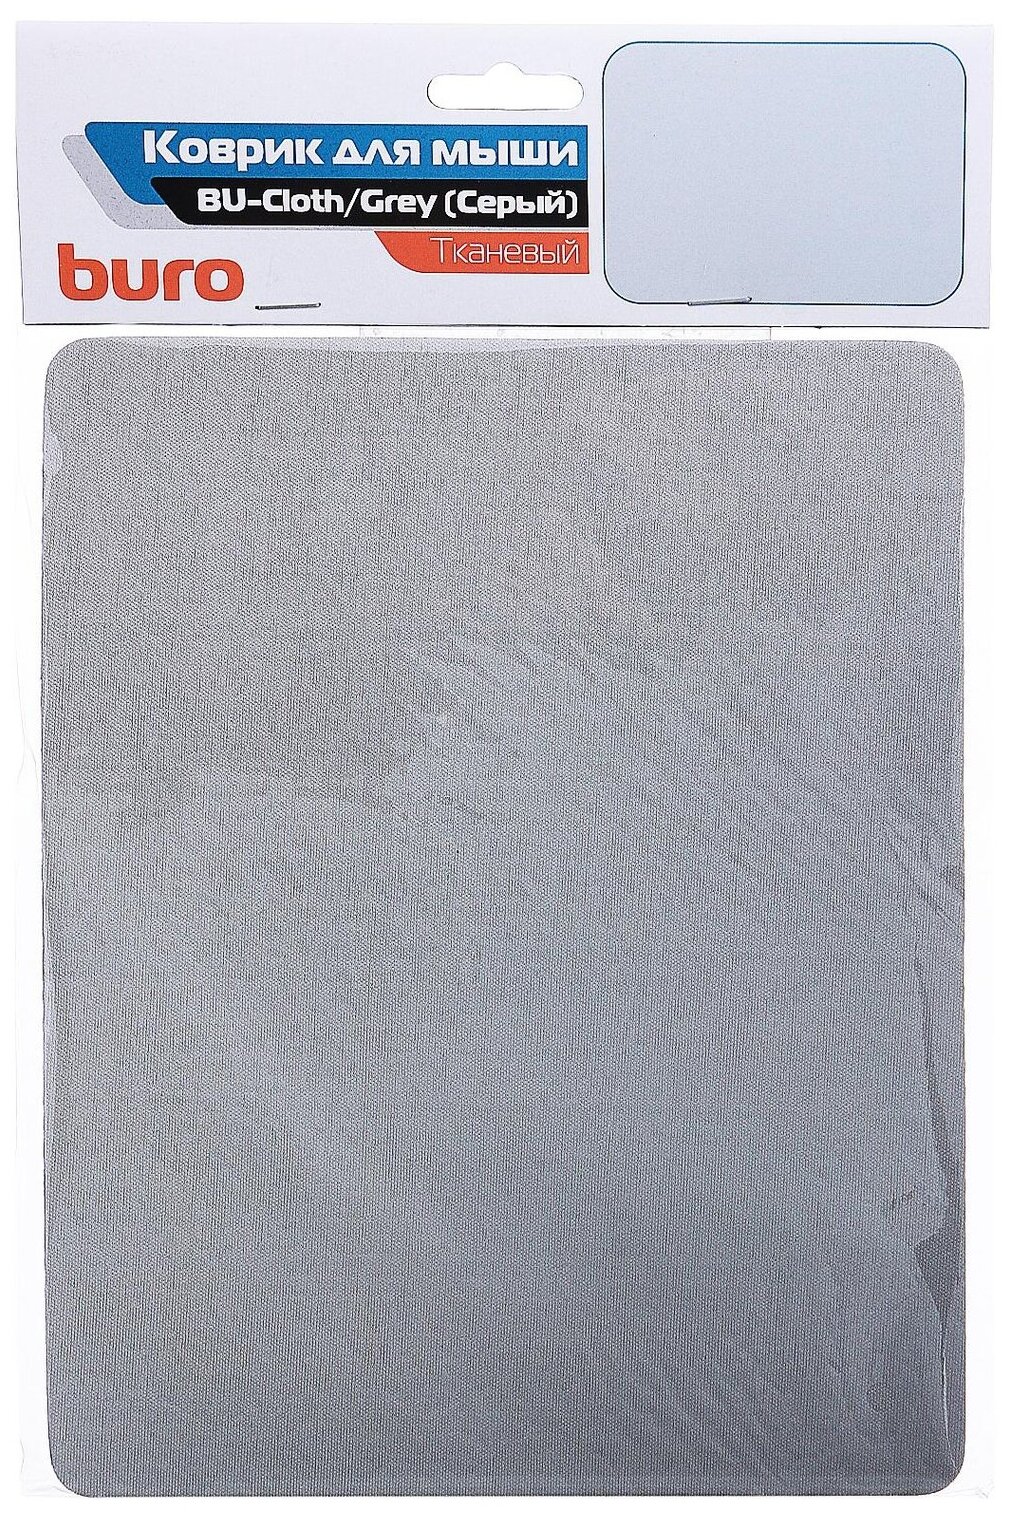 Коврик для мыши Buro BU-CLOTH серый 230x180x3мм